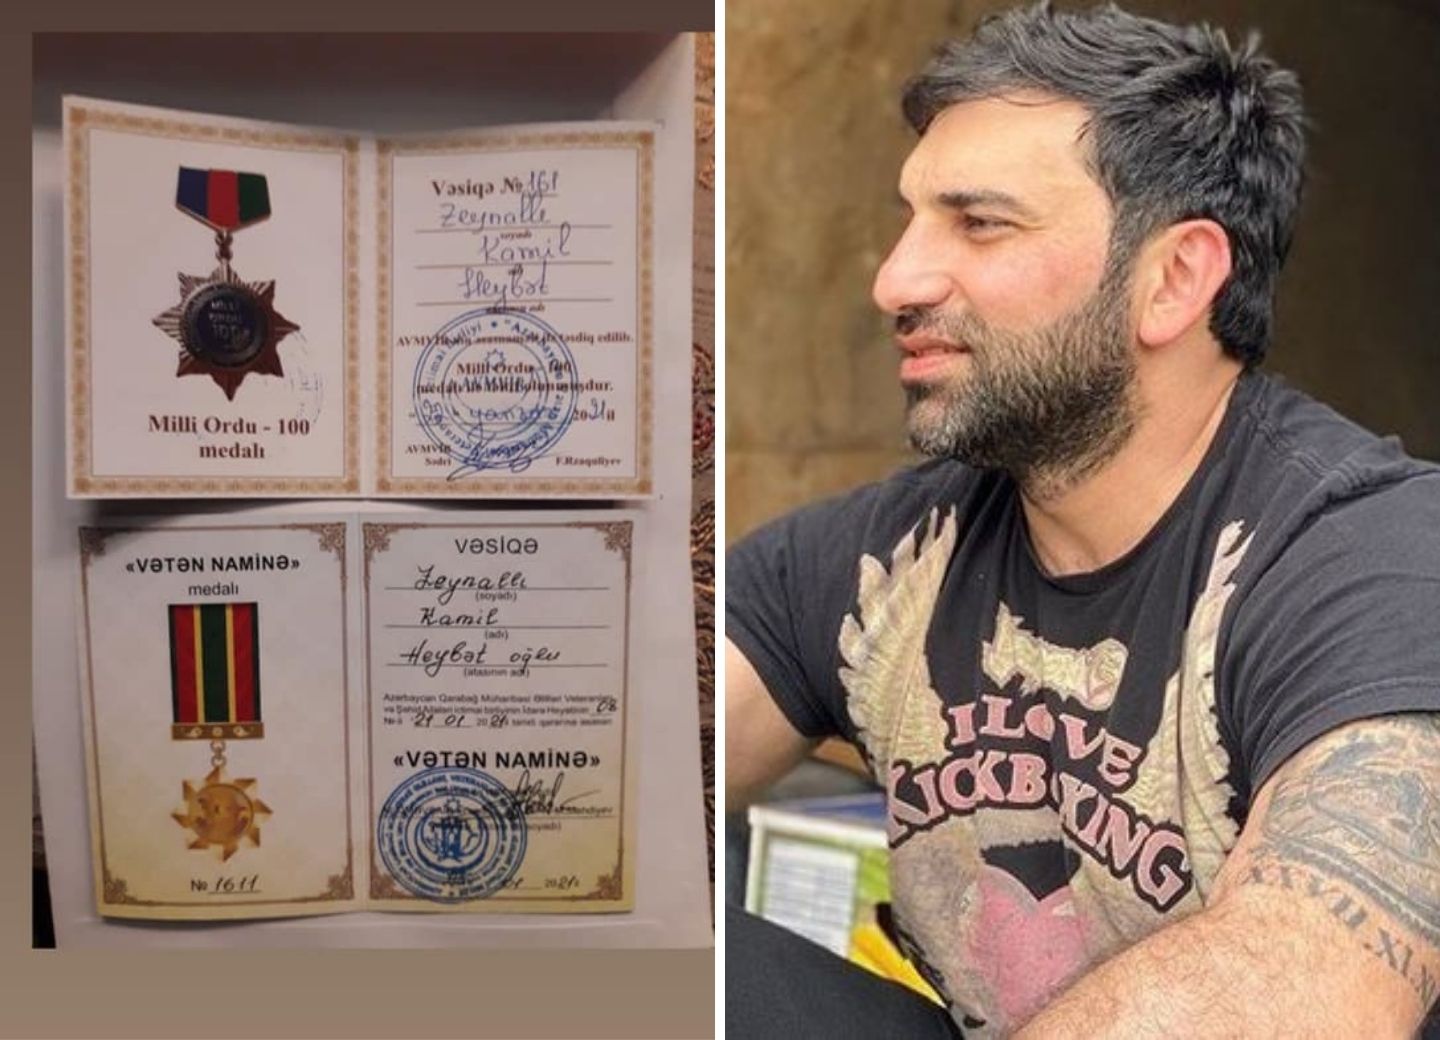 Госслужба отреагировала на сообщения о награждении Кямиля Зейналлы медалями - ФОТО